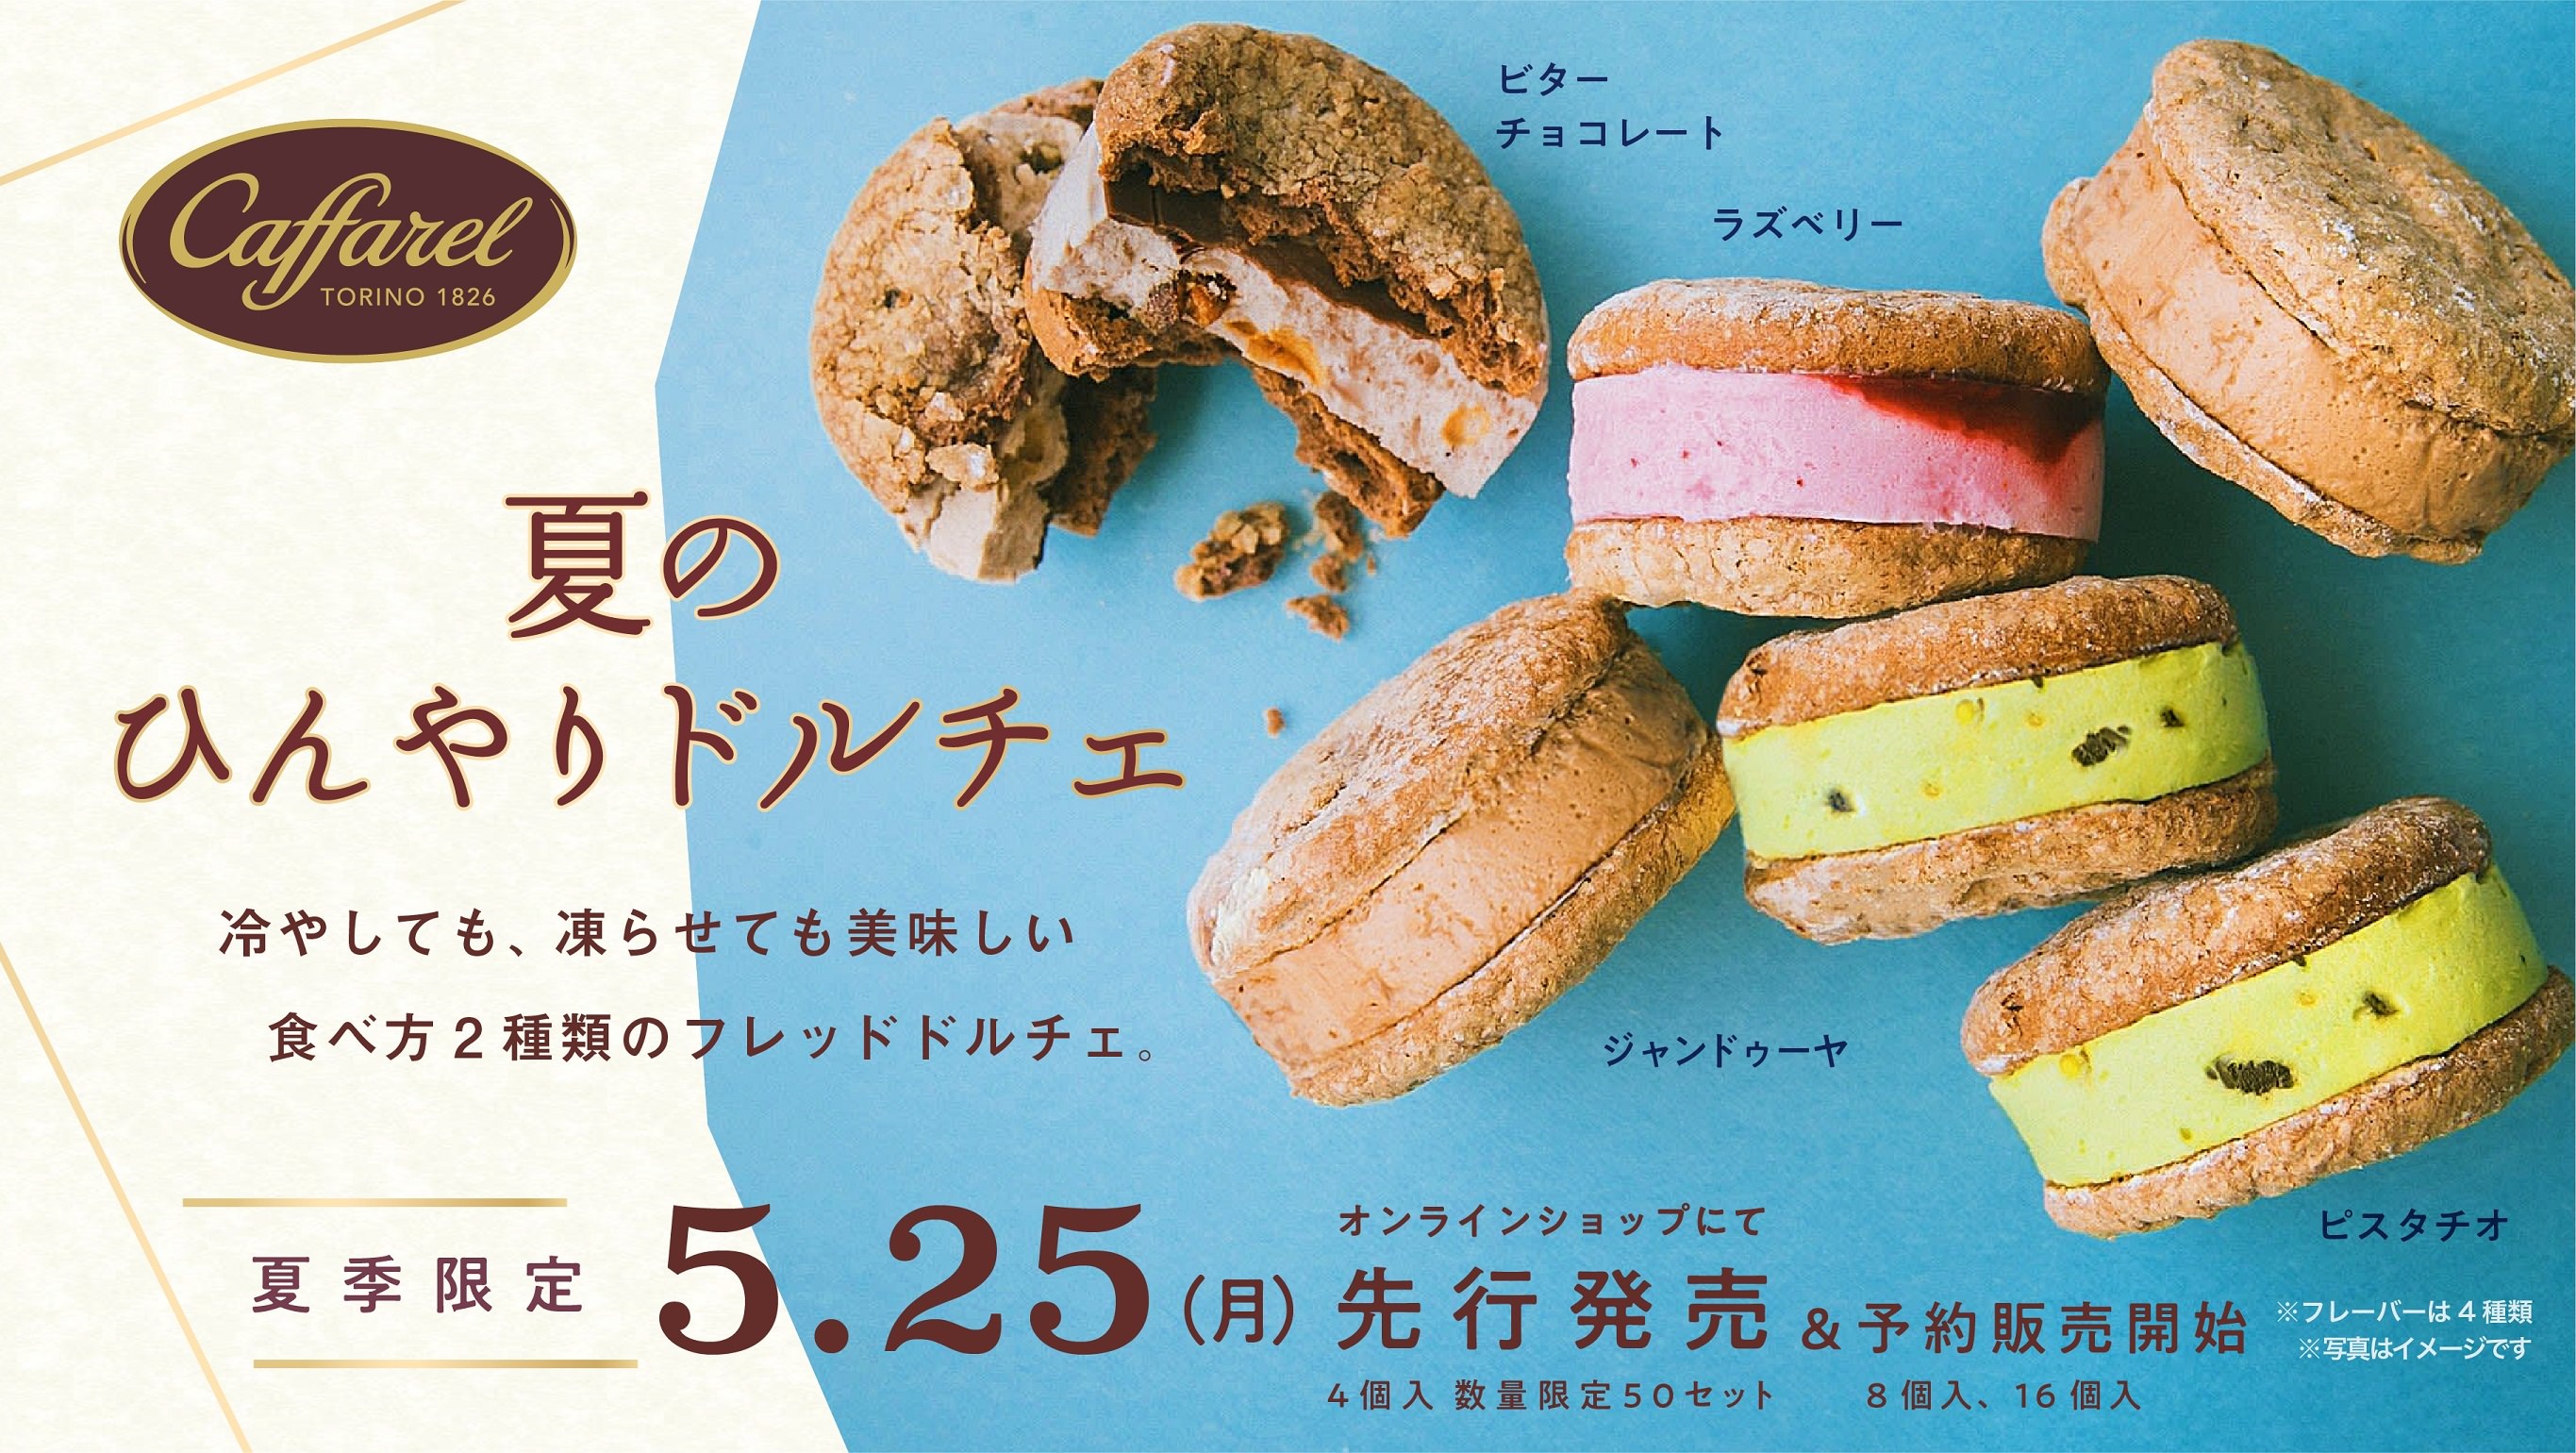 うおポチマルシェが精肉、野菜、果物の生鮮食品を拡充し、東京都内7区で宅配サービス提供開始